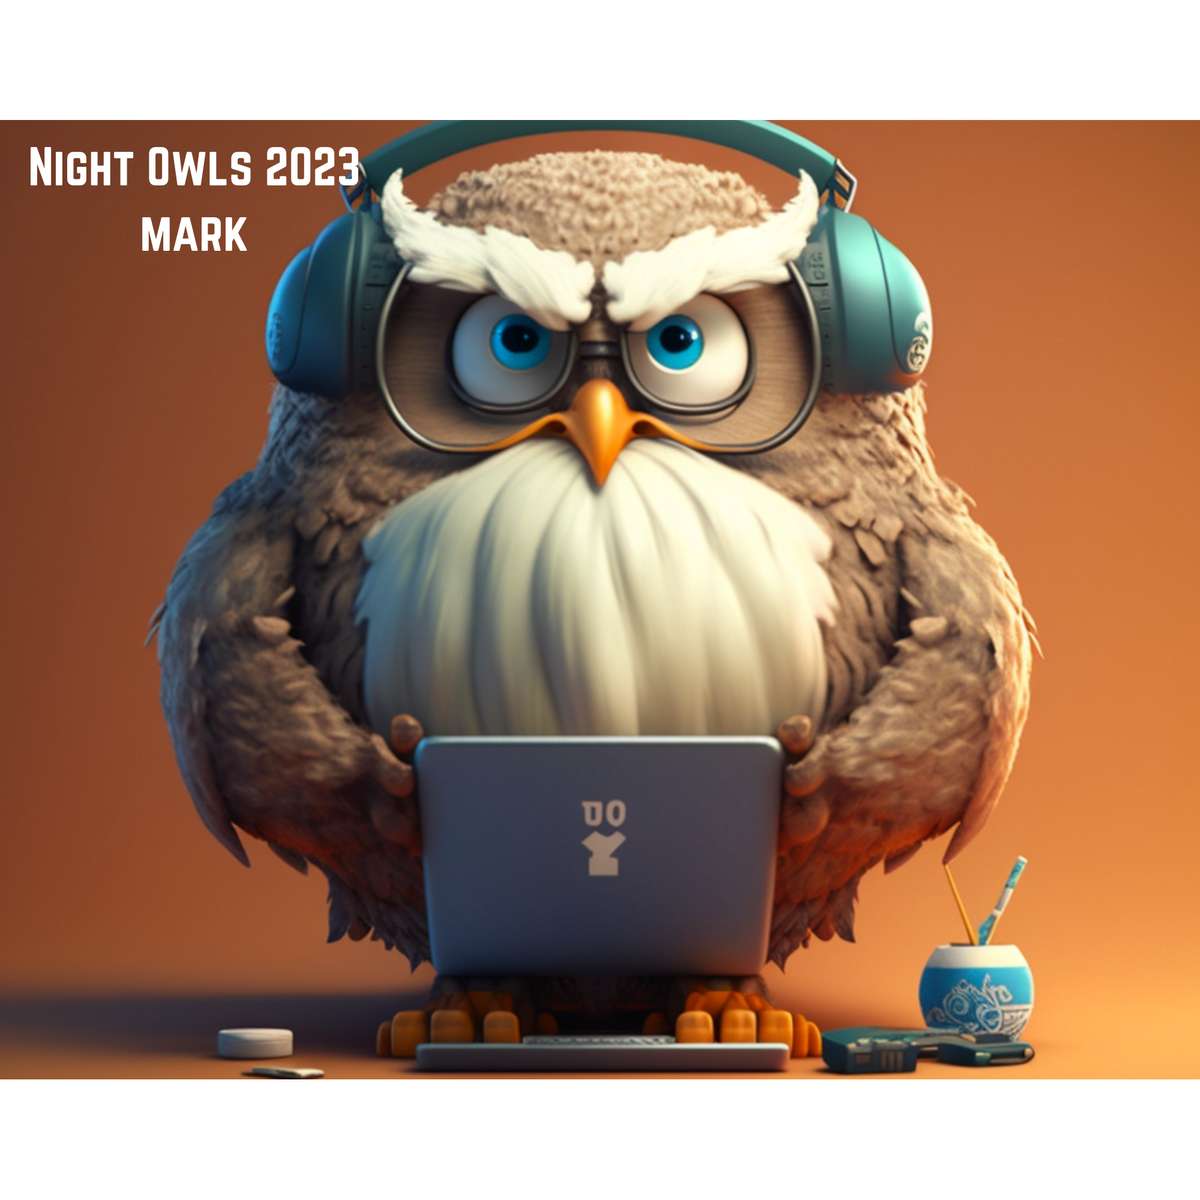 Марк нощни сови 2023 онлайн пъзел